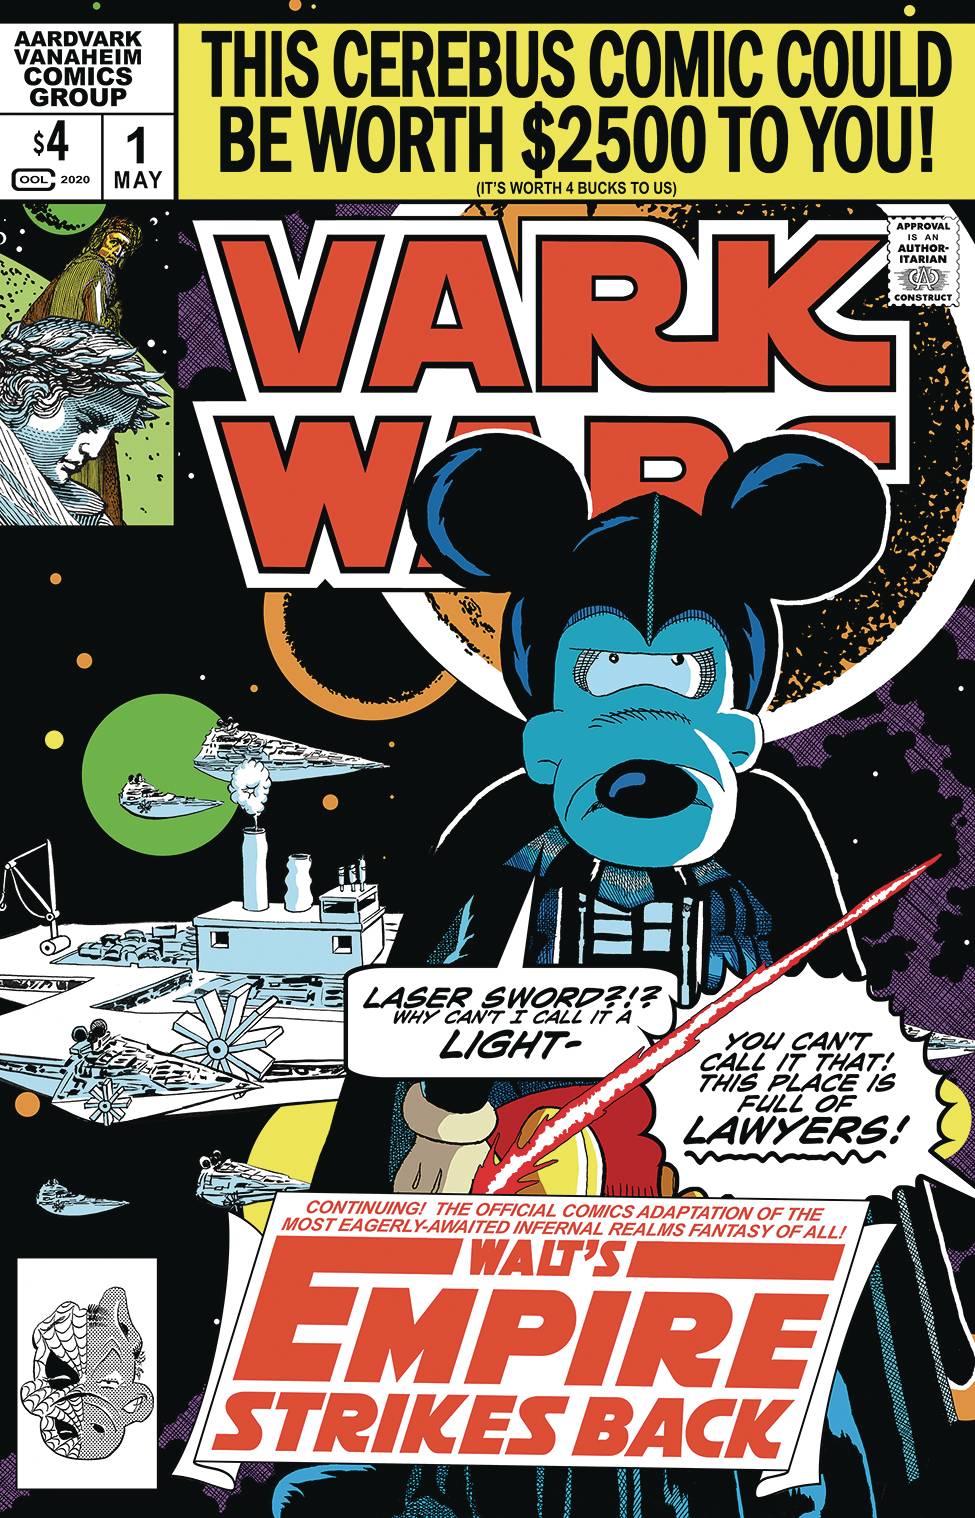 Vark Wars Walt's Empire Strikes Back 1 - Heroes Cave